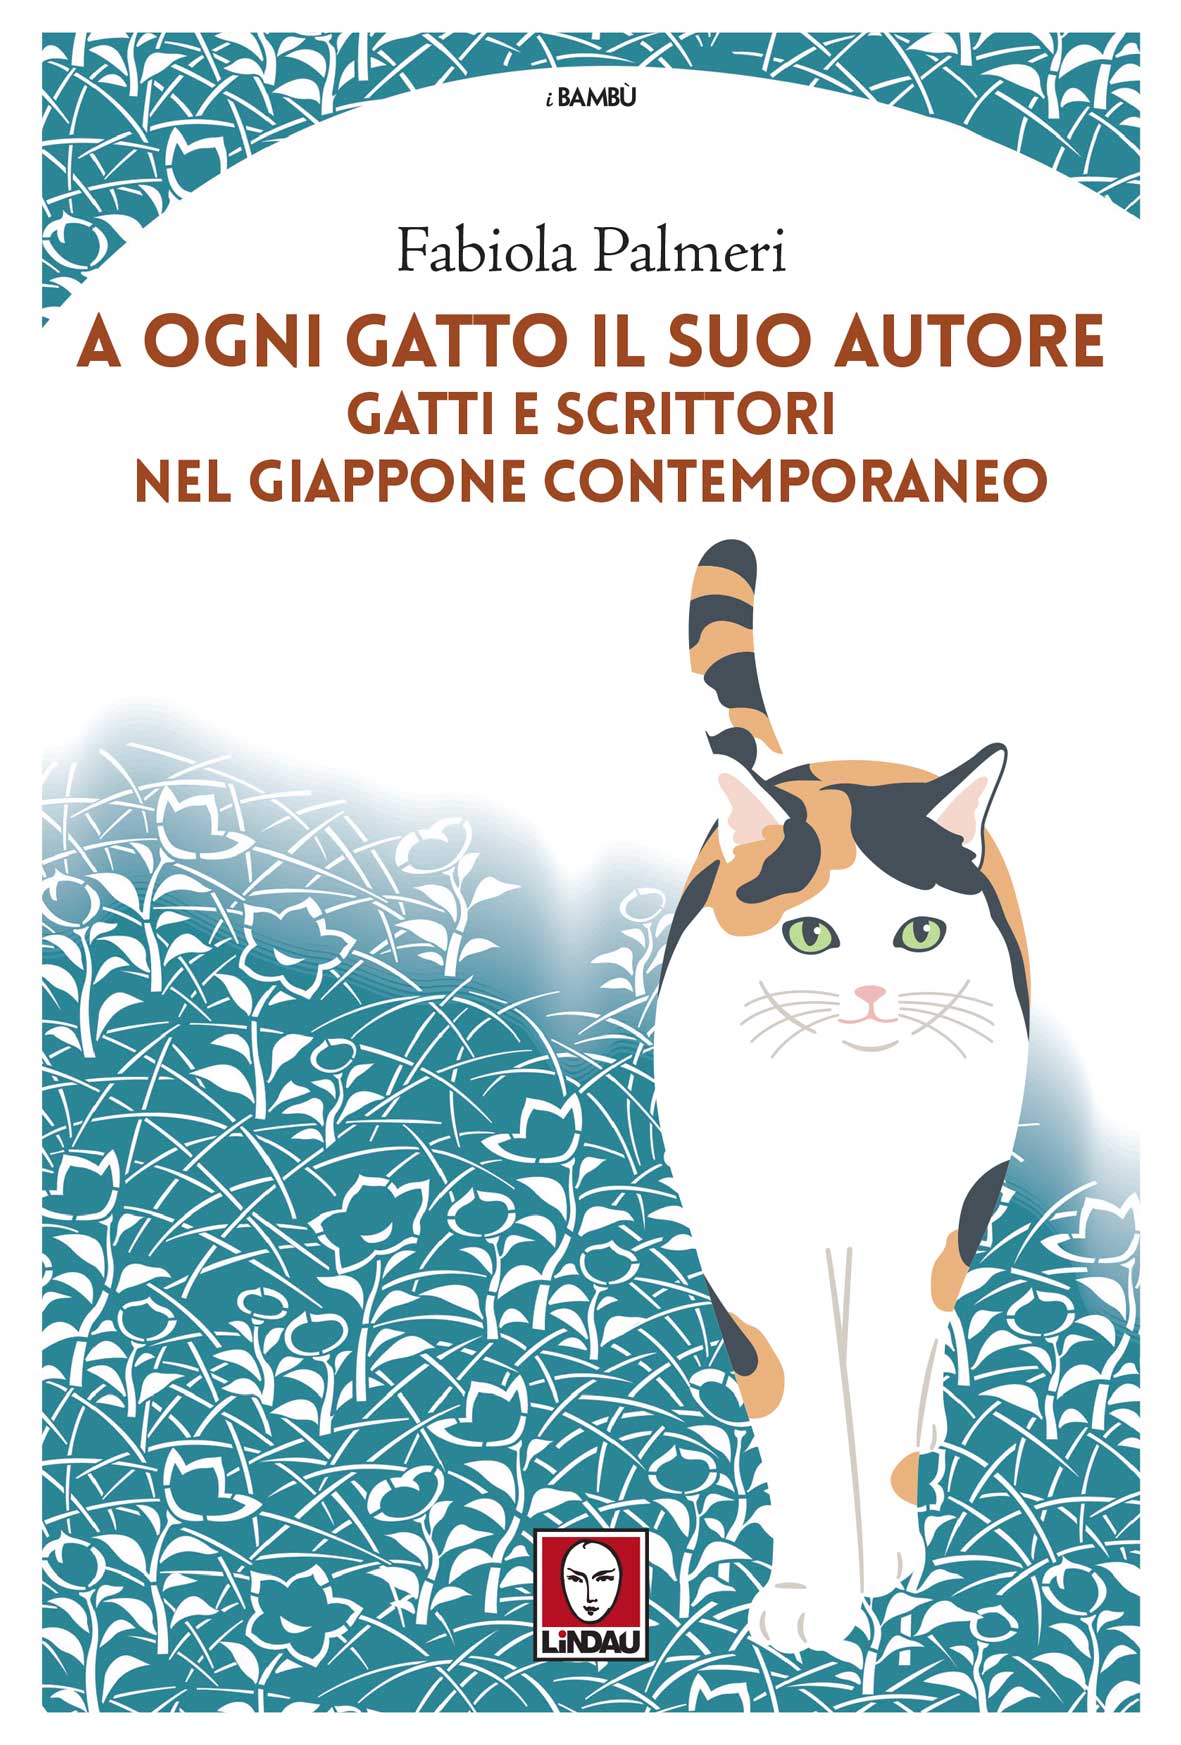 Presentazione Libro "A ogni gatto il suo autore" con Fabiola Palmeri